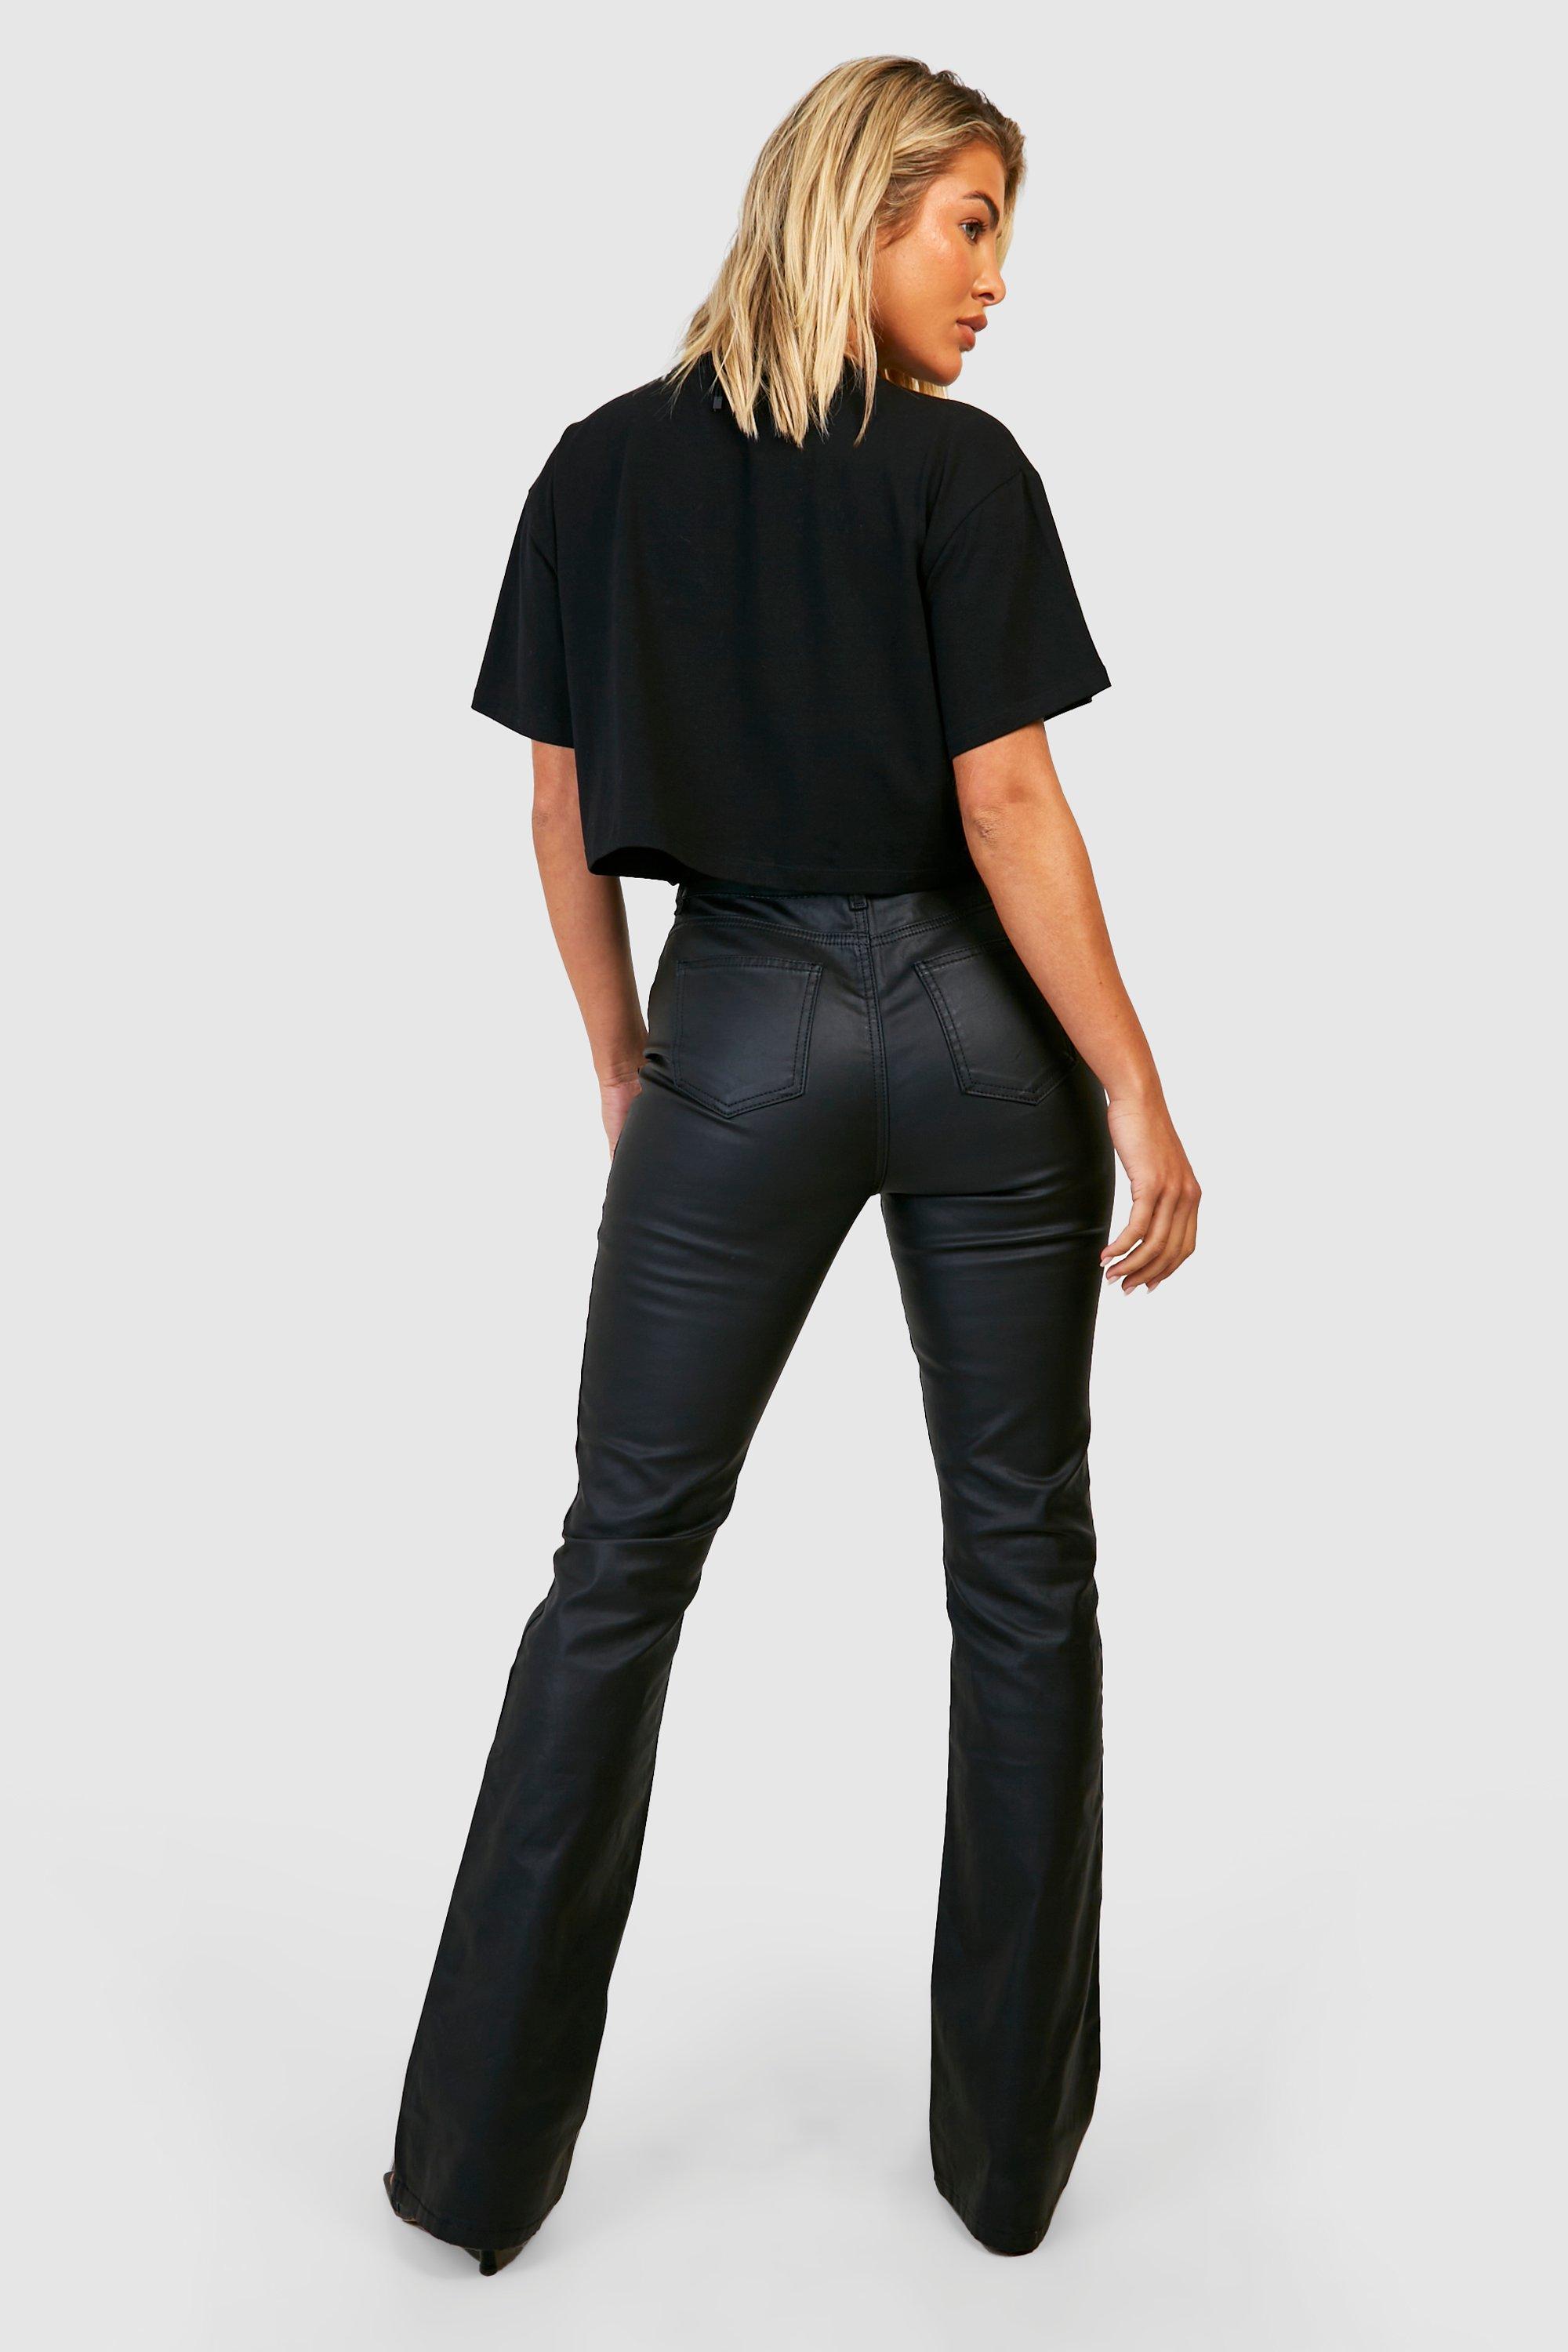 https://media.boohoo.com/i/boohoo/gzz26796_black_xl_1/female-black-coated-high-waisted-flared-jeans